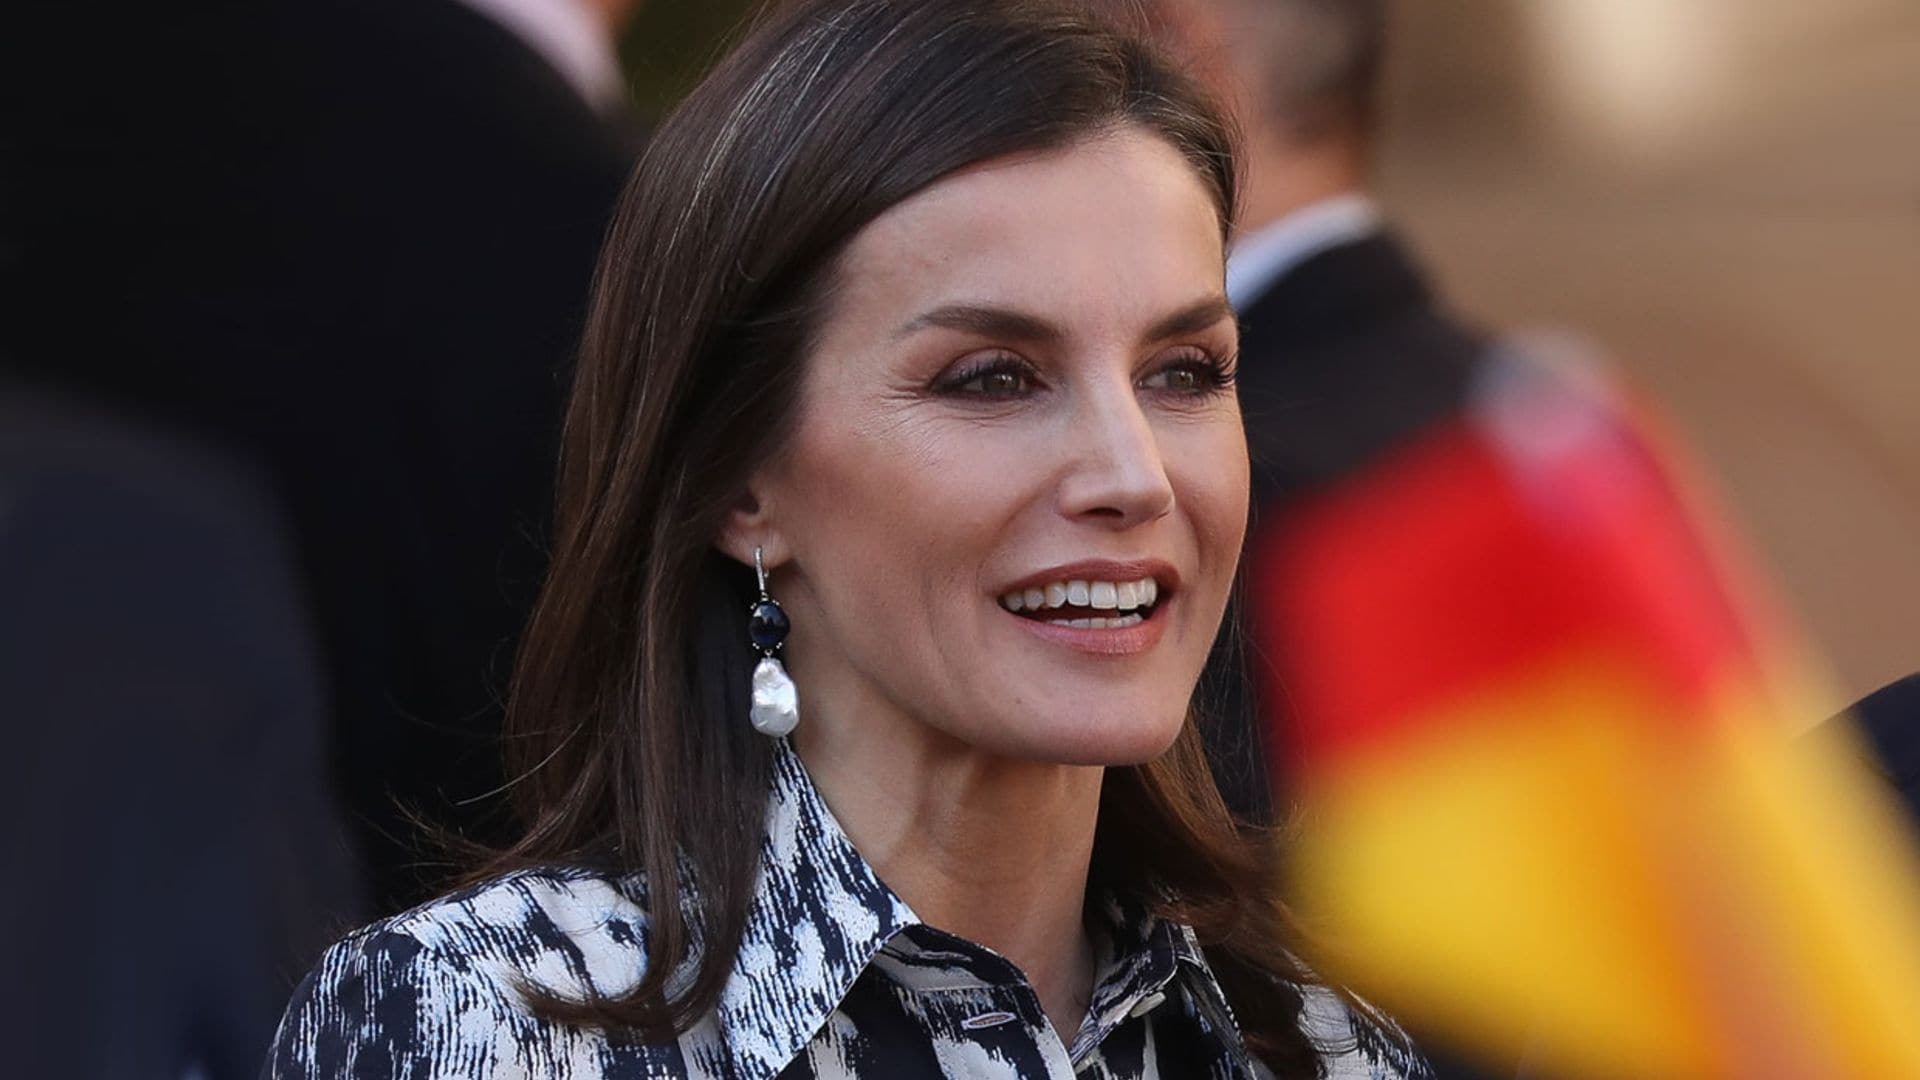 La Reina recicla el look viral de Victoria Beckham que tanto gustó